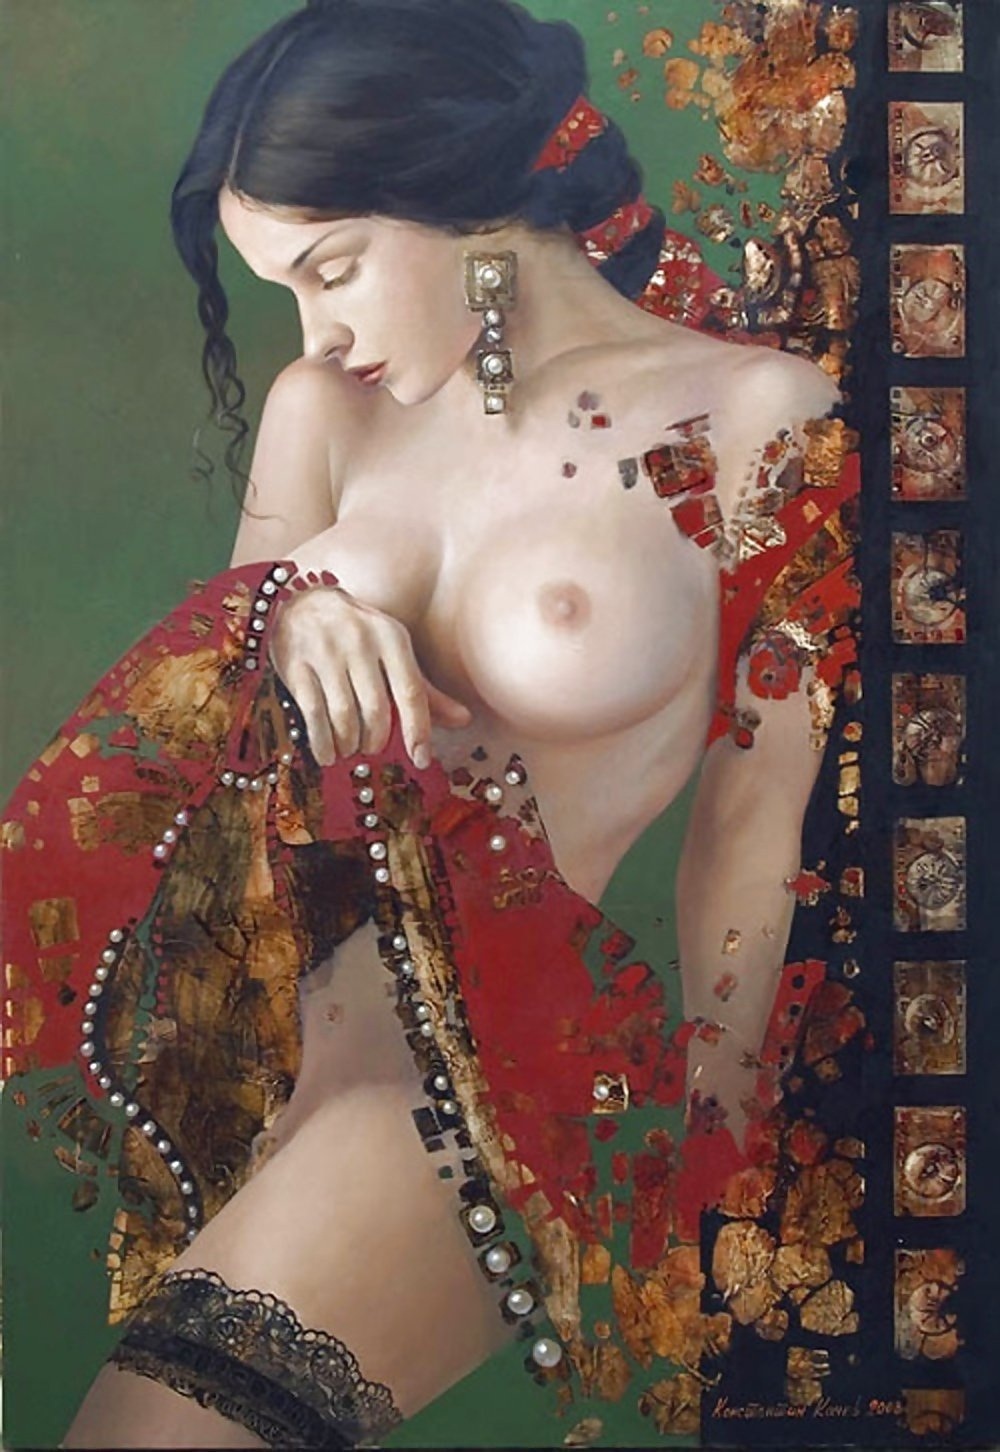 Рисованные голые девушки востока - фото порно devkis